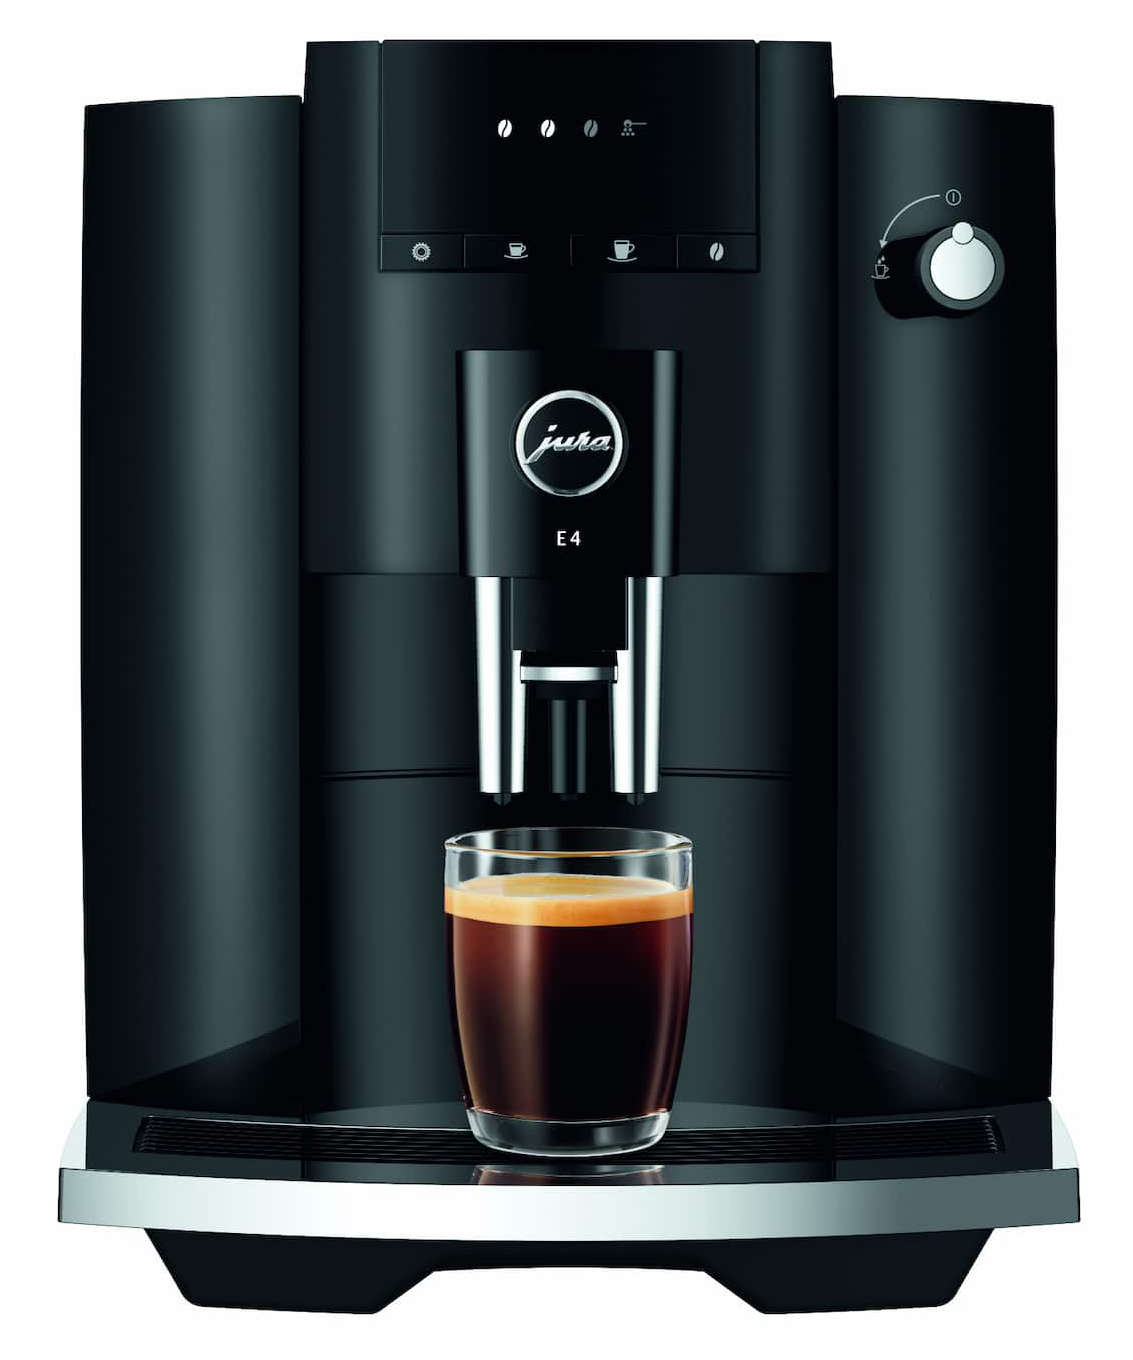 Die Jura E4 besinnt sich auf das Wesentliche: schwarzer Kaffee oder Espresso in höchster Qualität.